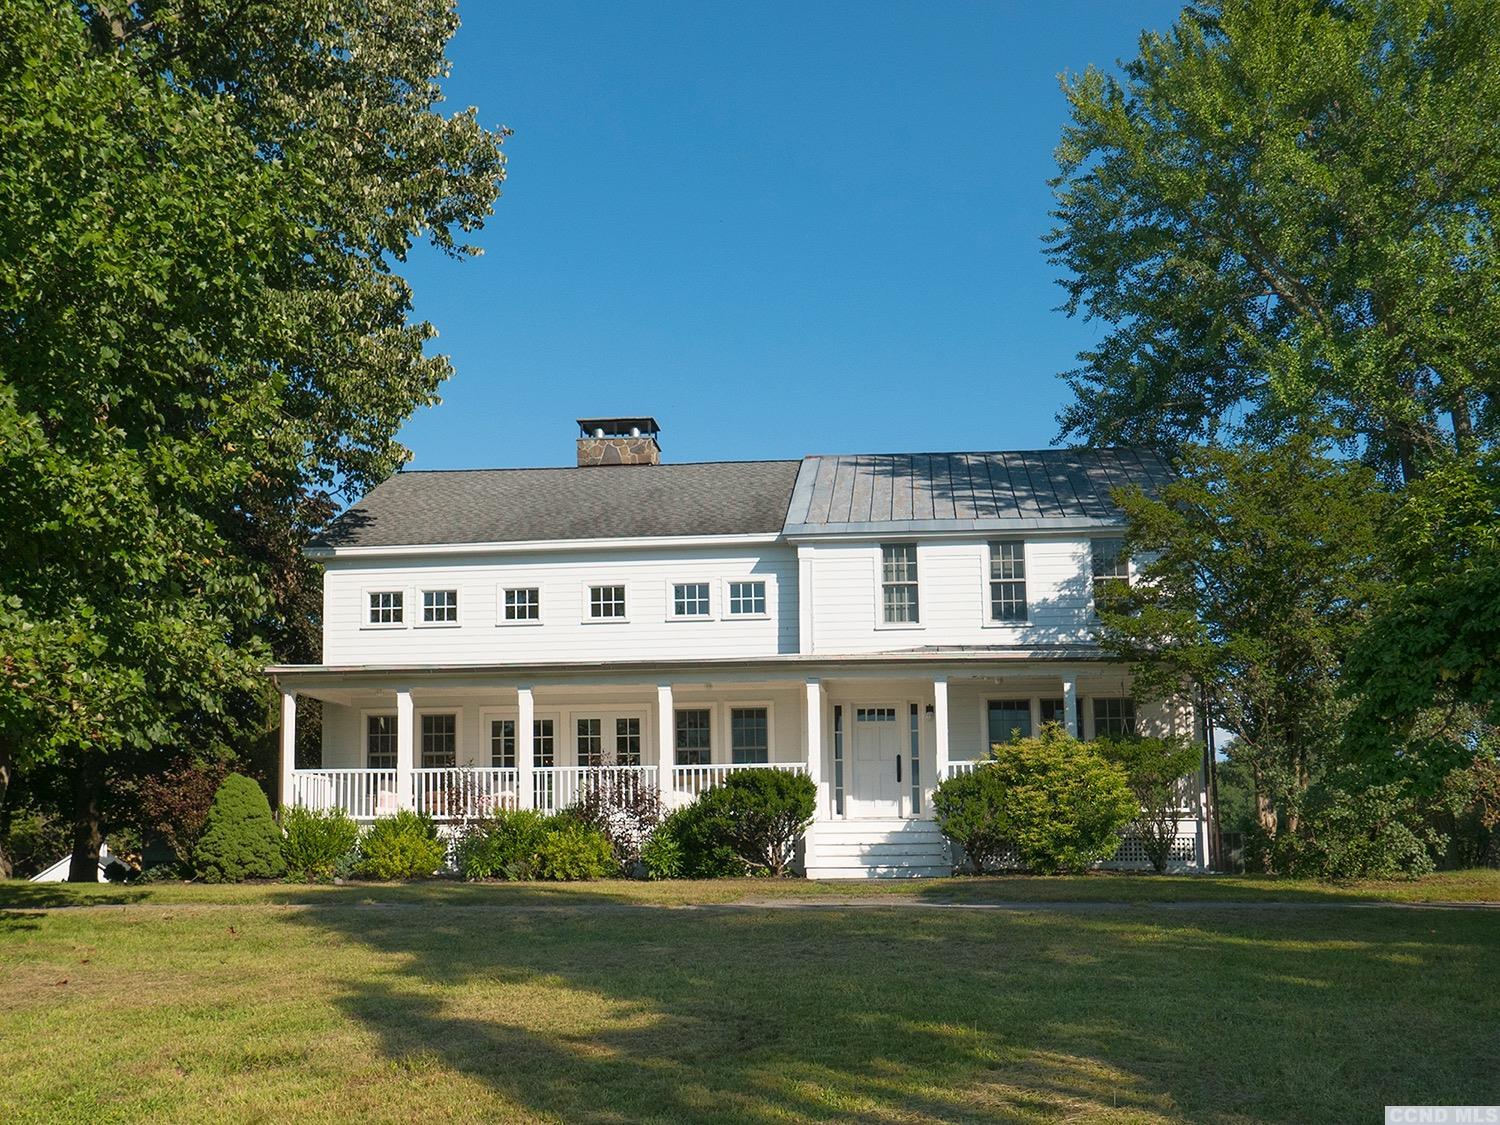 1840s farmhouse